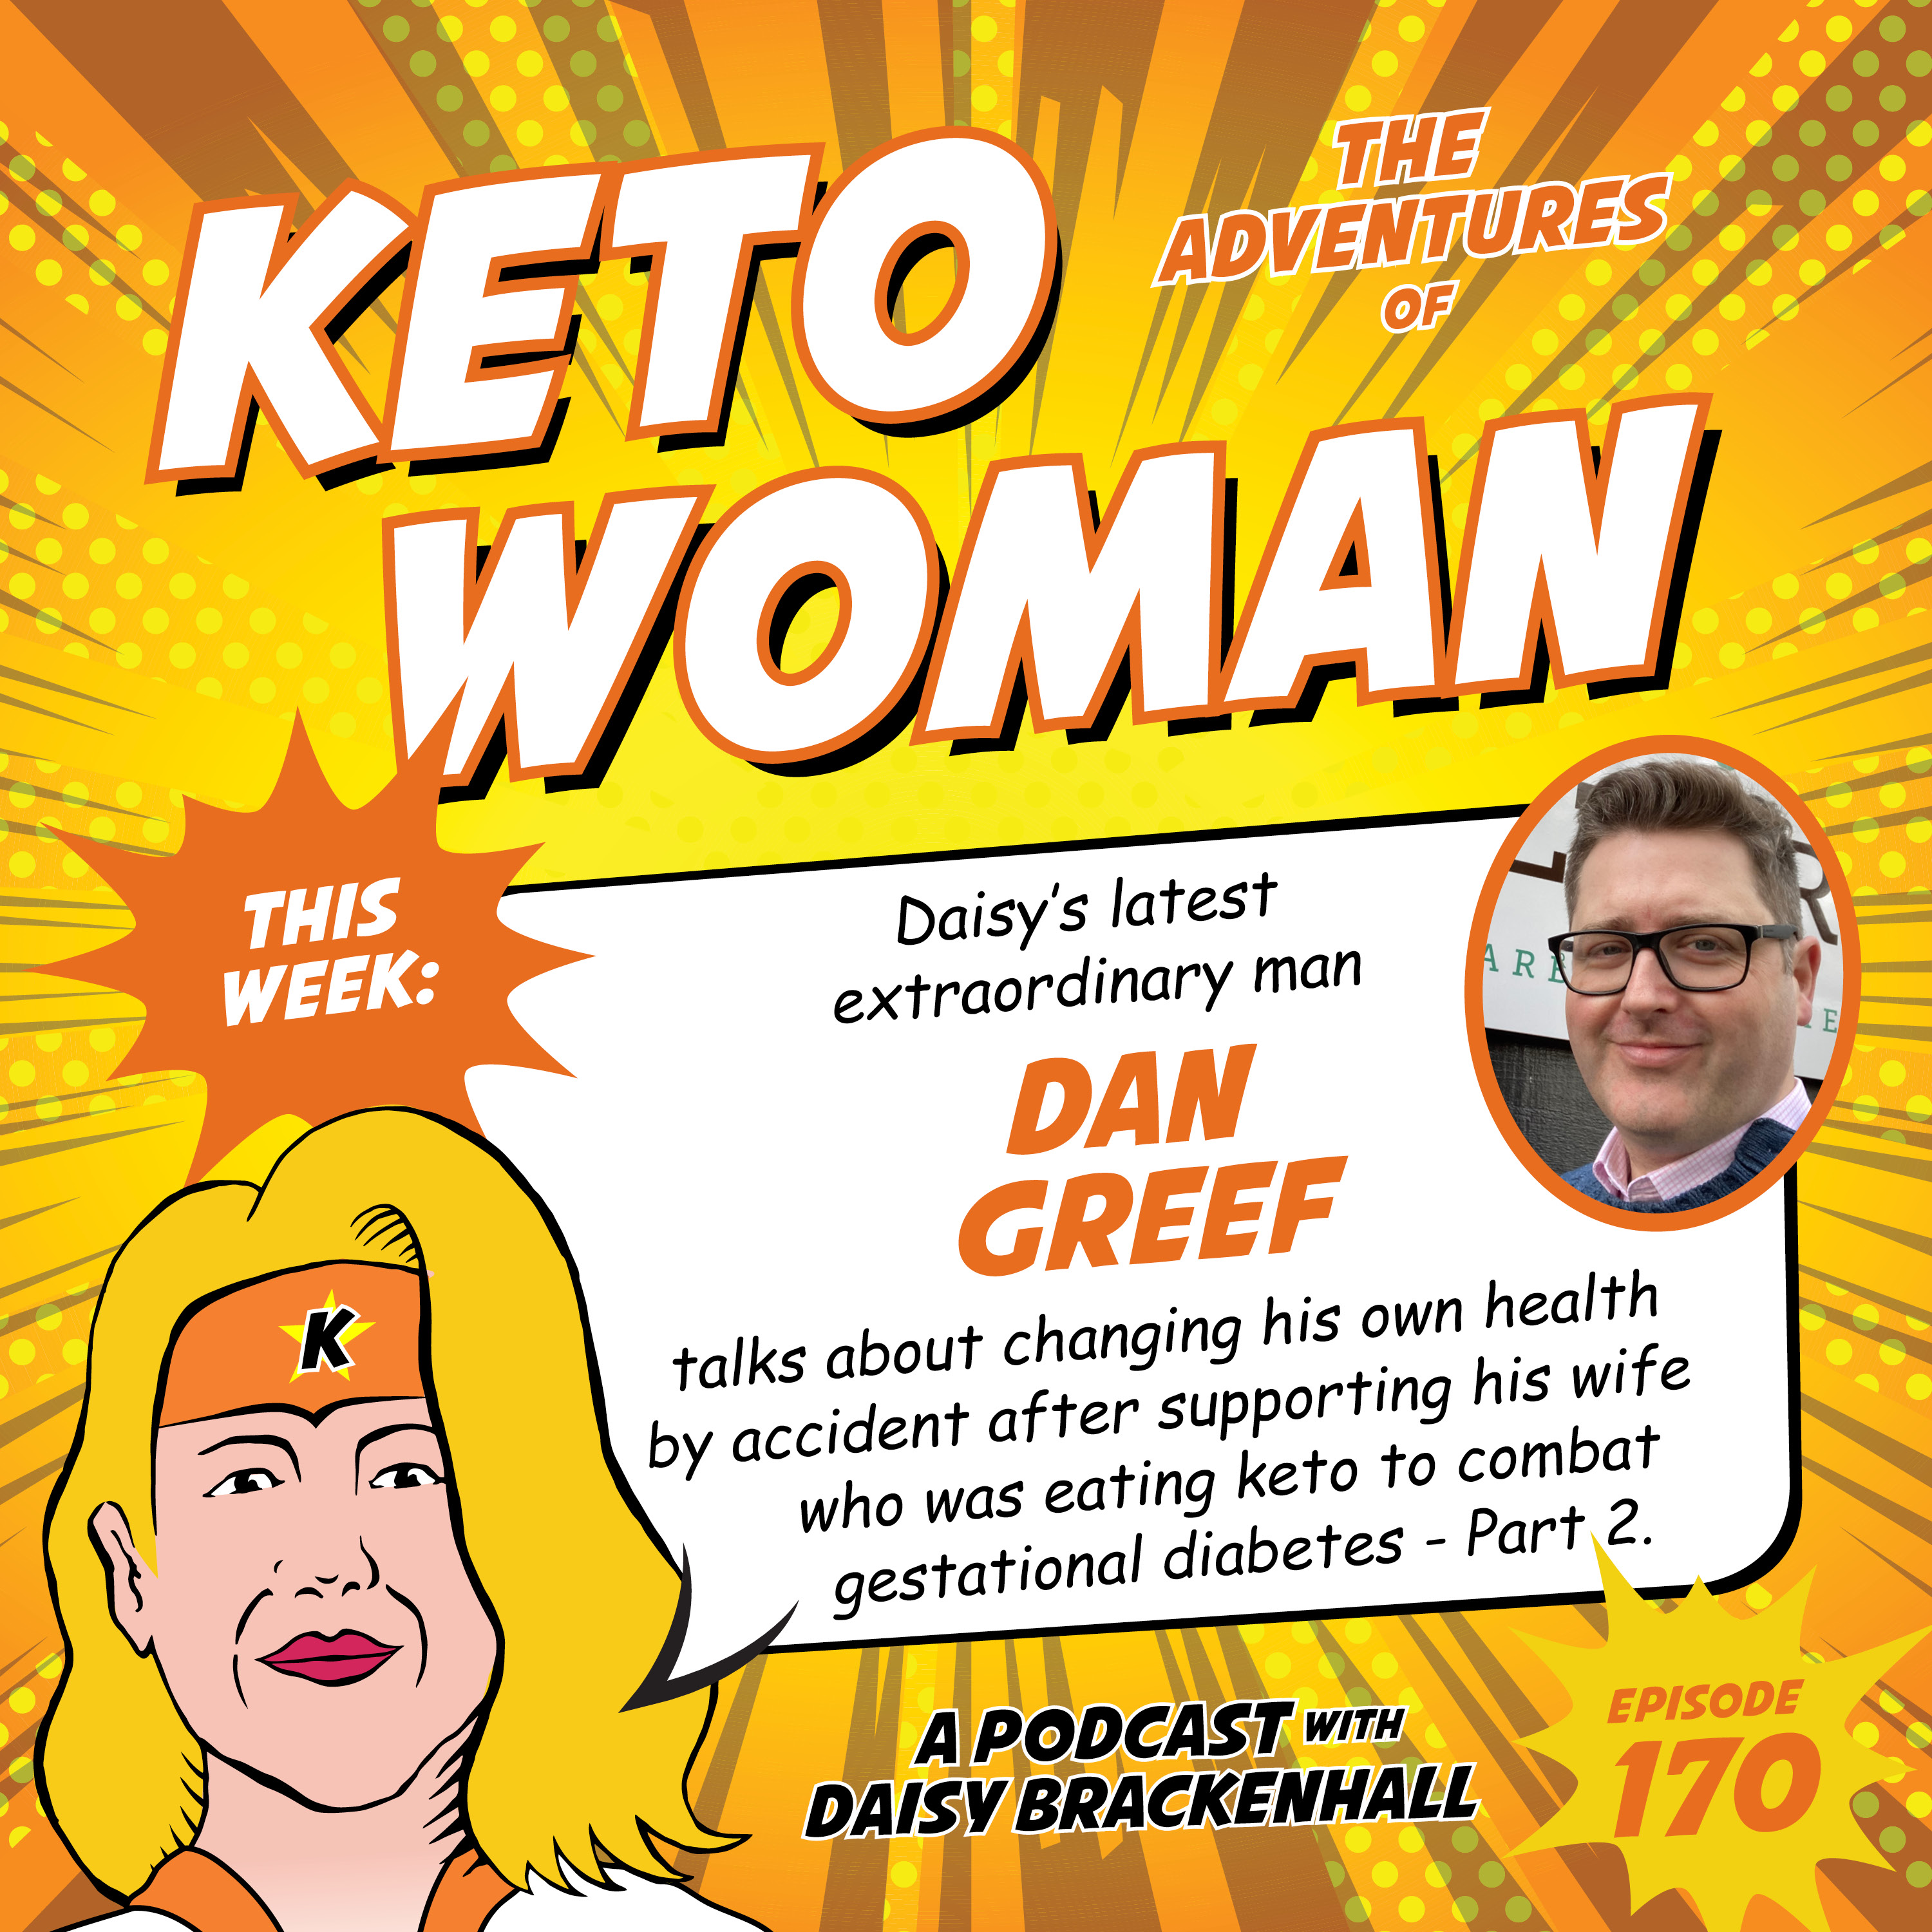 Dan Greef - More Keto in the UK and Cake!